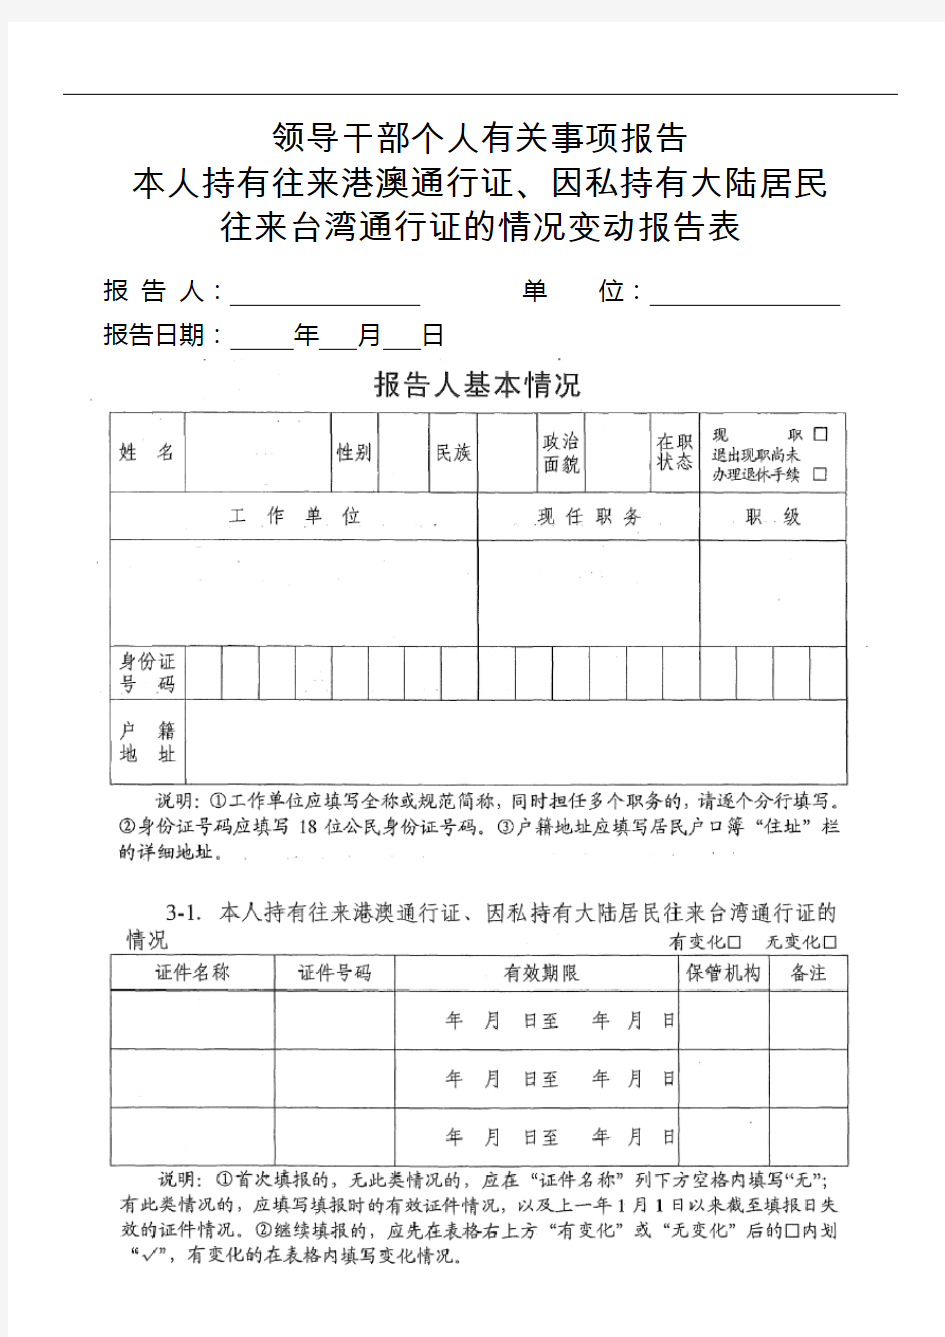 3-1.本人持有往来港澳通行证、因私持有大陆居民往来台湾通行证的情况变动报告表